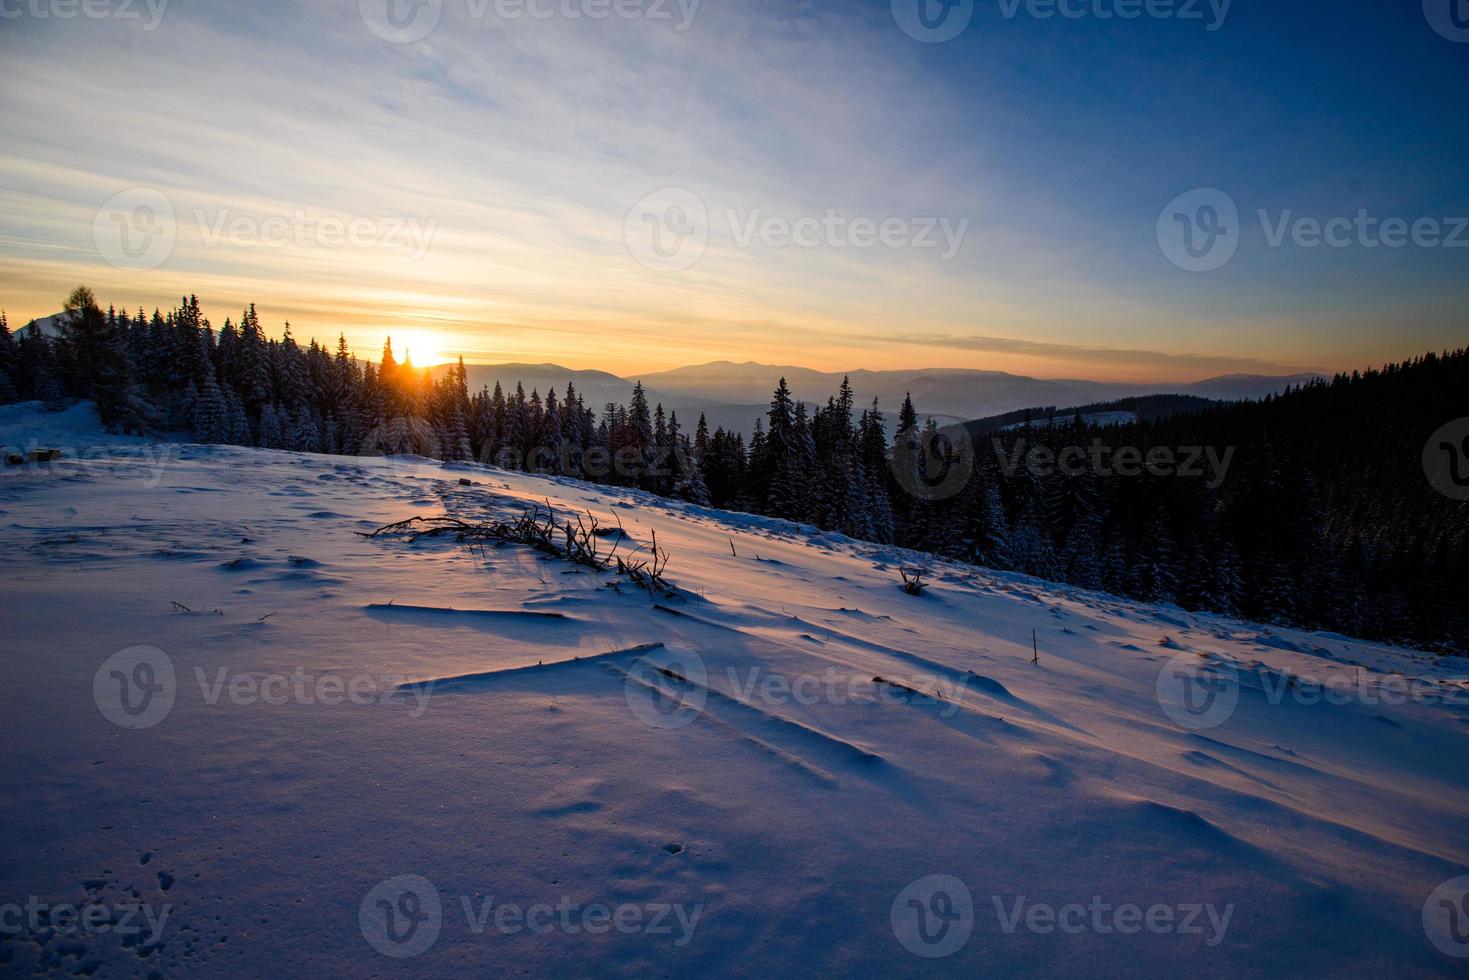 bela paisagem de inverno foto